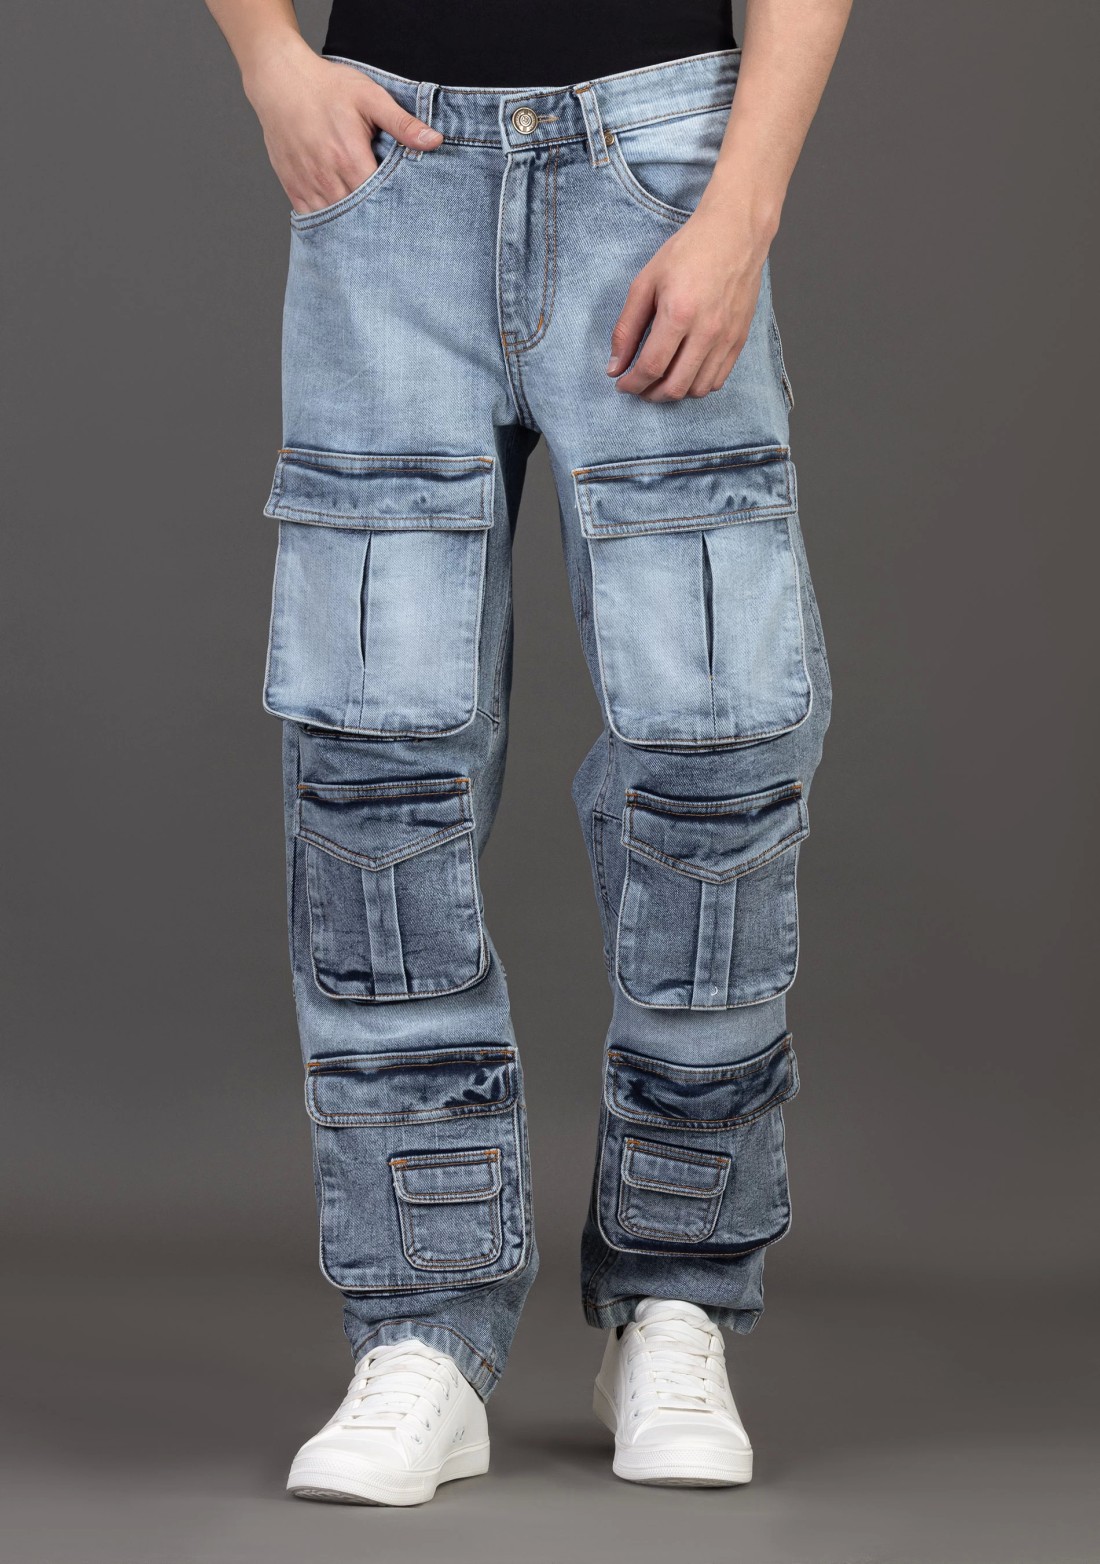 Buy Highlander Light Blue Relax Cargo Jeans for Men Online at Rs.807 - Ketch